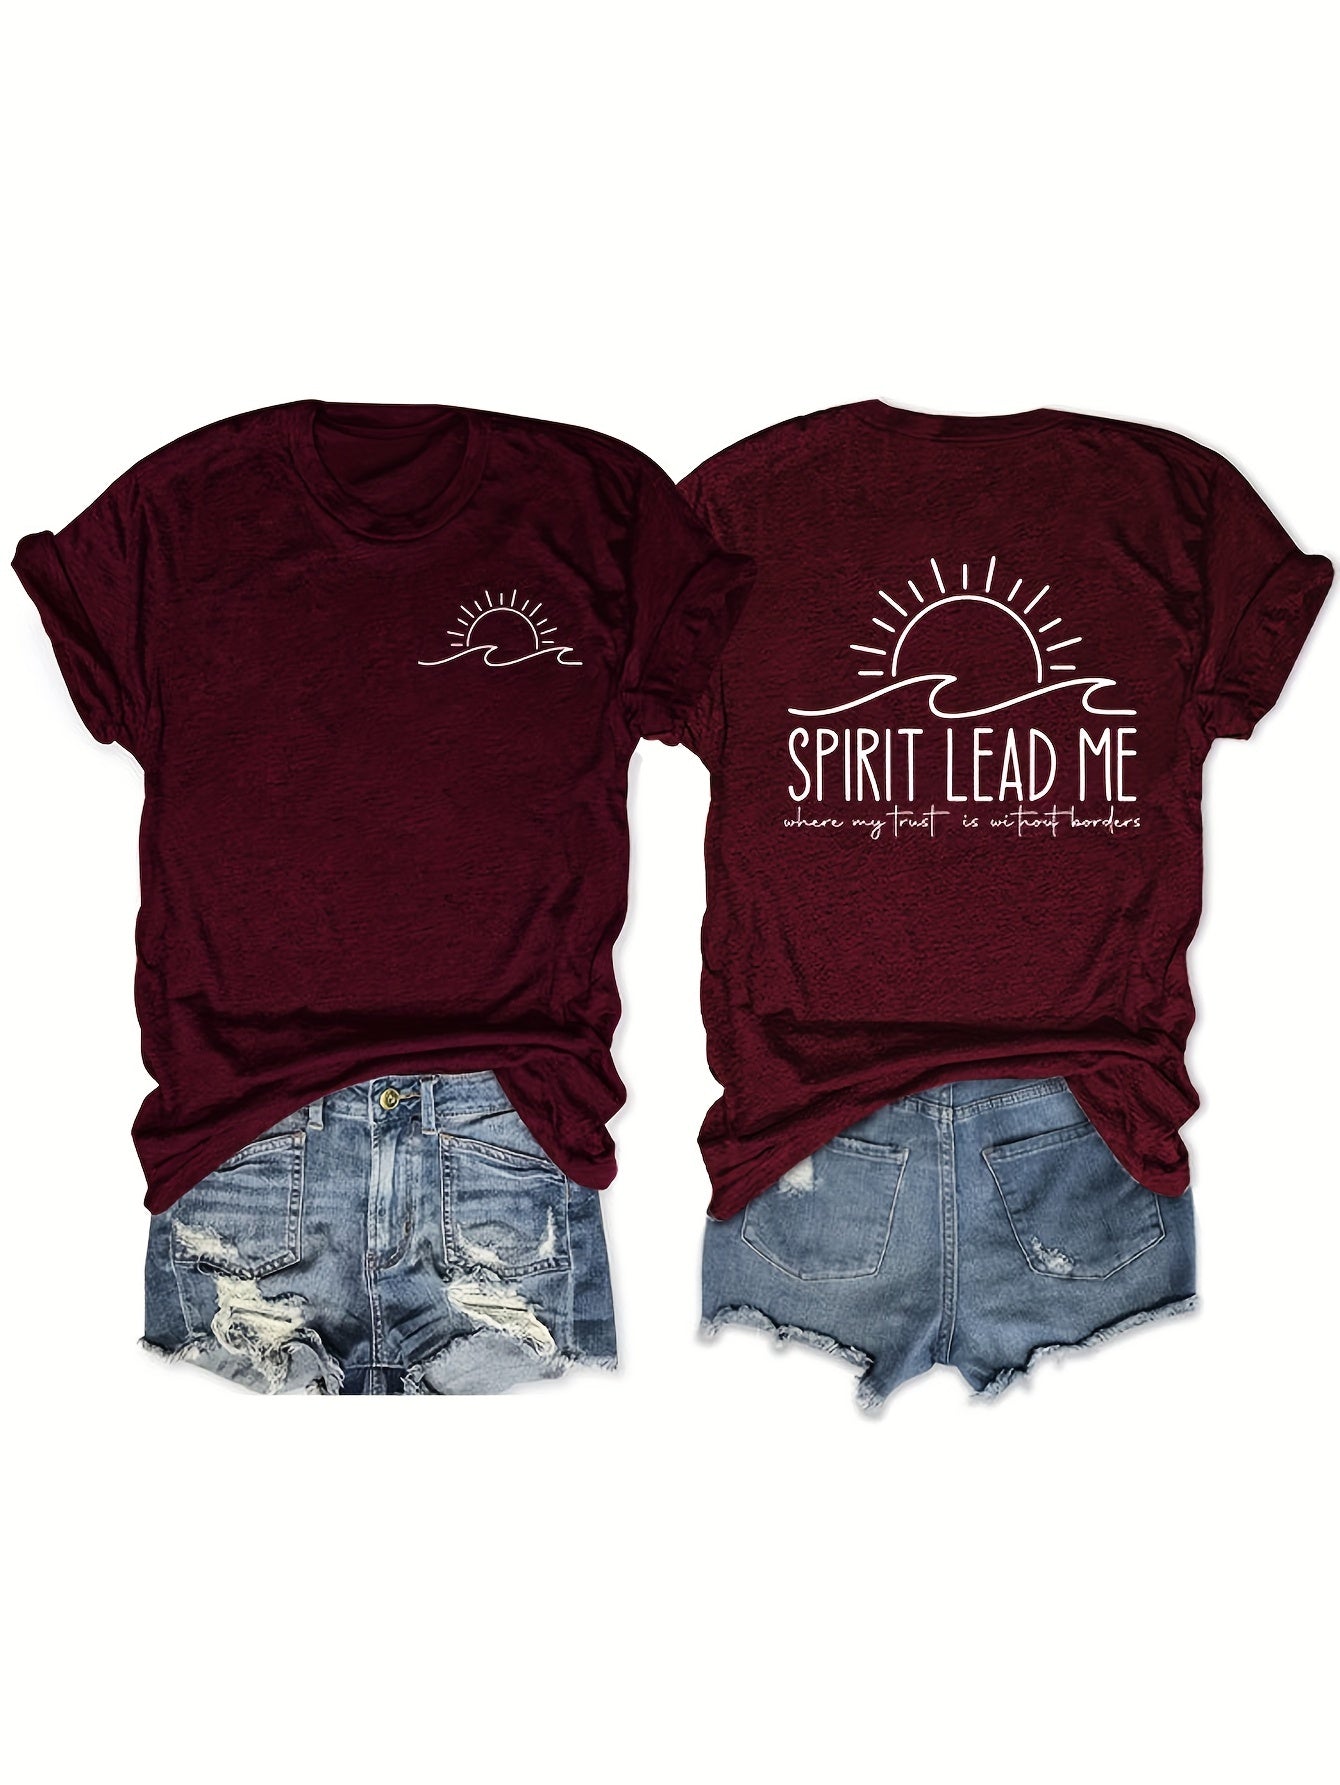 Spirit Lead Me Plus Size Women's Christian T-shirt claimedbygoddesigns